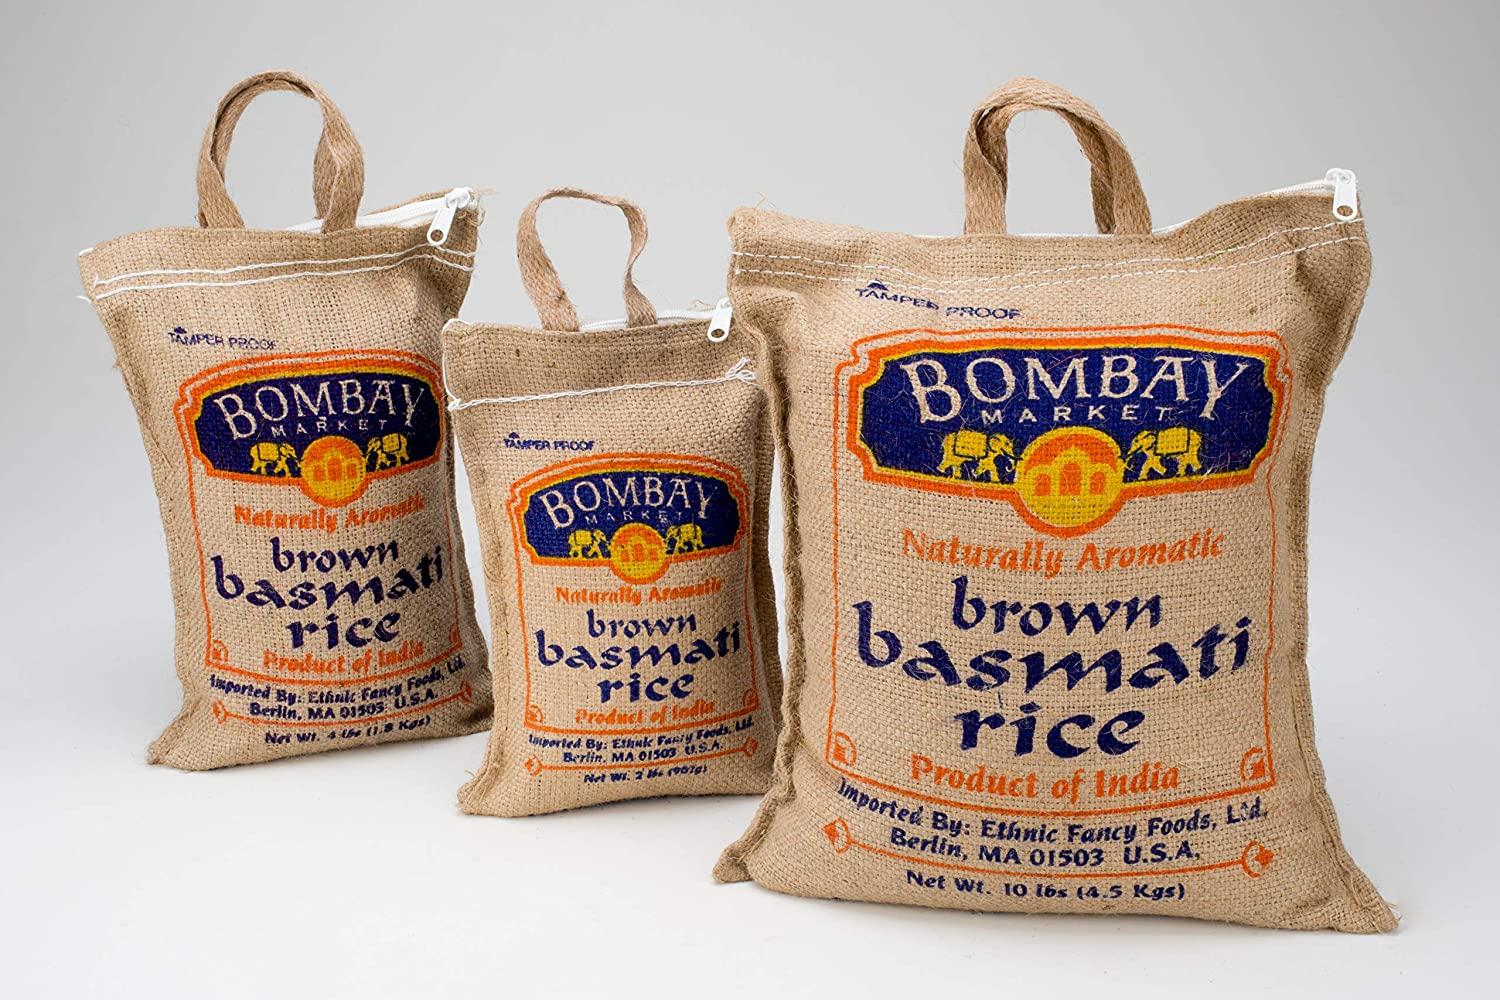 Bombay Bag - CEO - BOMBAY BAG WORK SHOP | LinkedIn